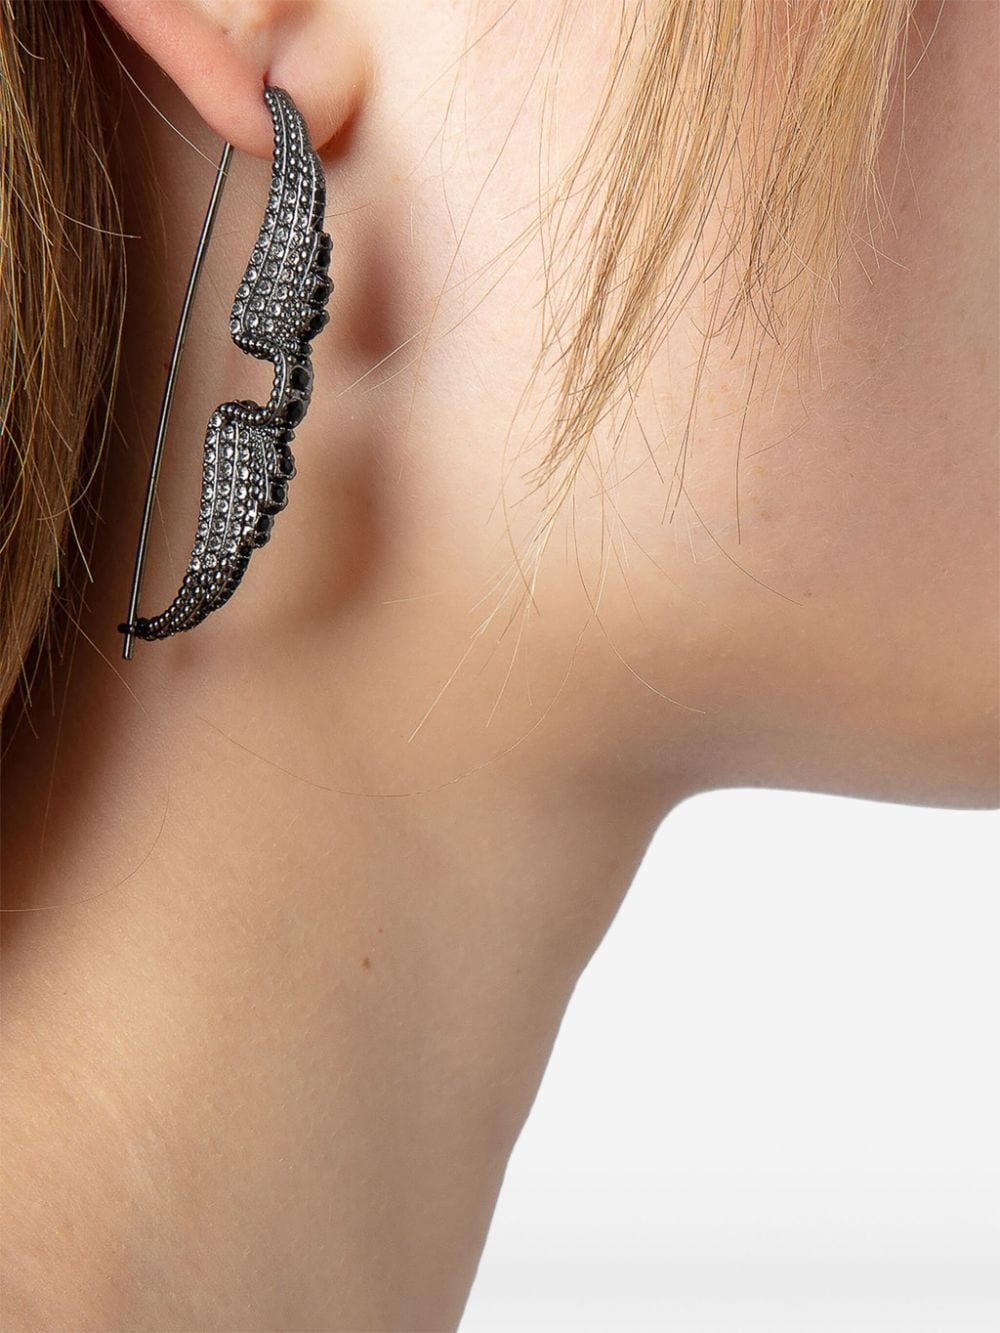 Rock piercing earrings - 4